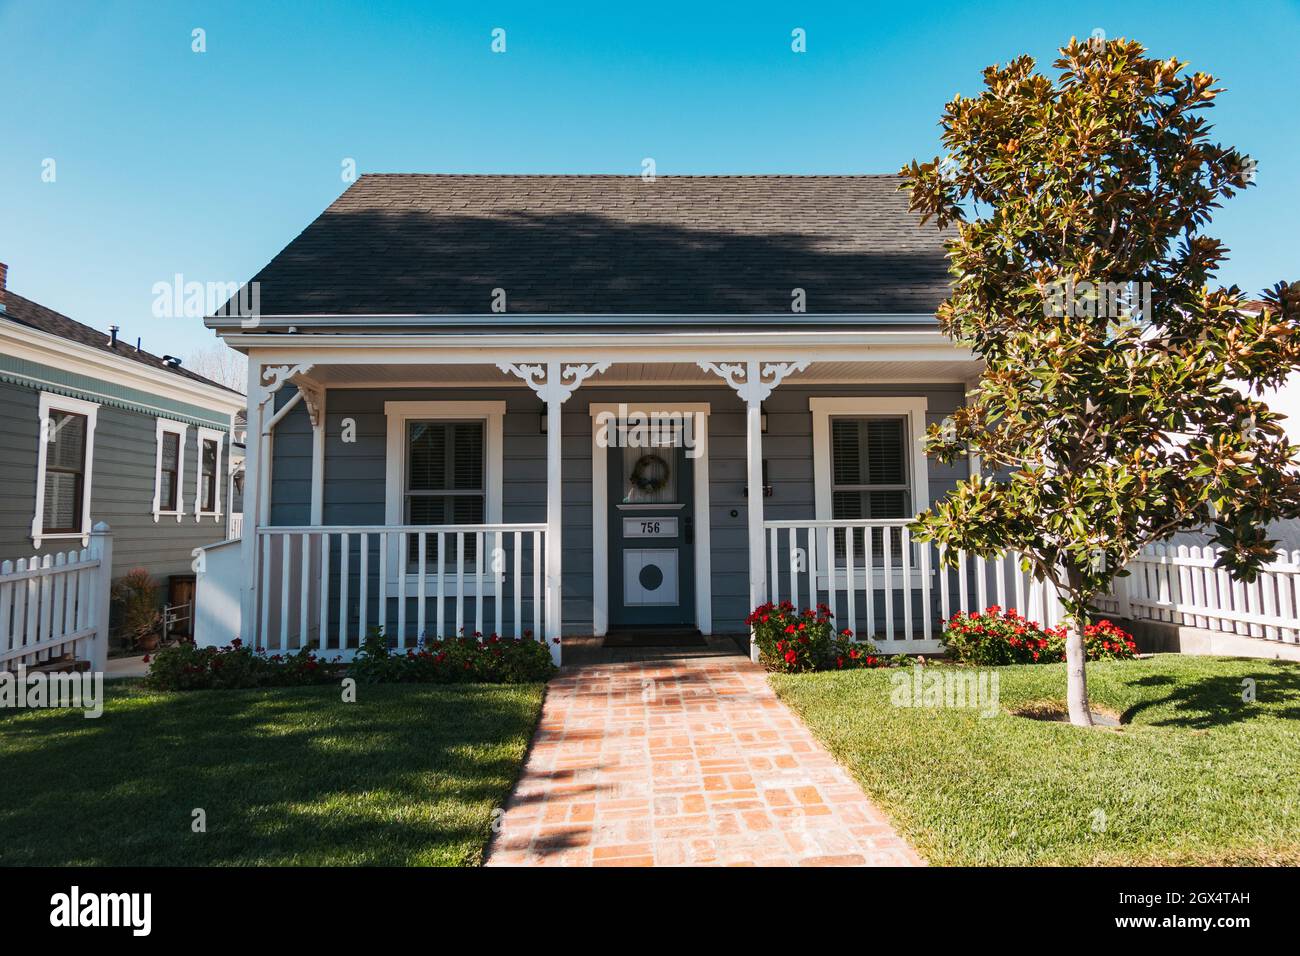 An ornate bungalow in suburban San Luis Obispo, California Stock Photo